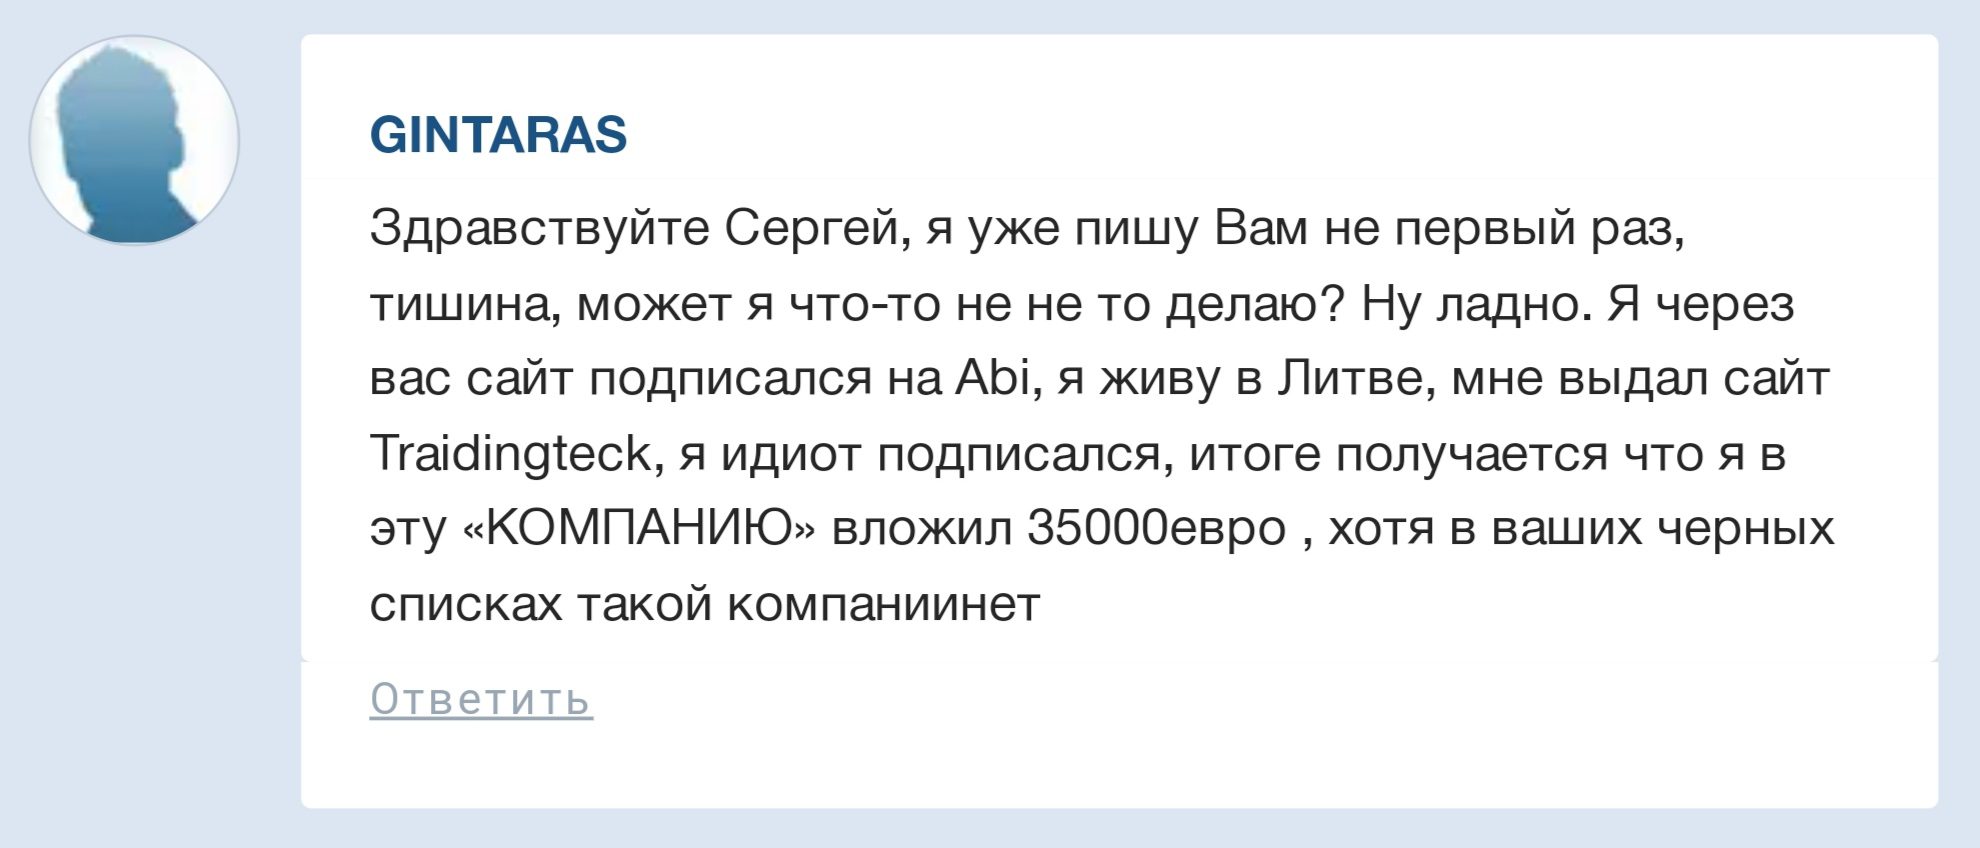 Sergmedvedev.ru отзывы